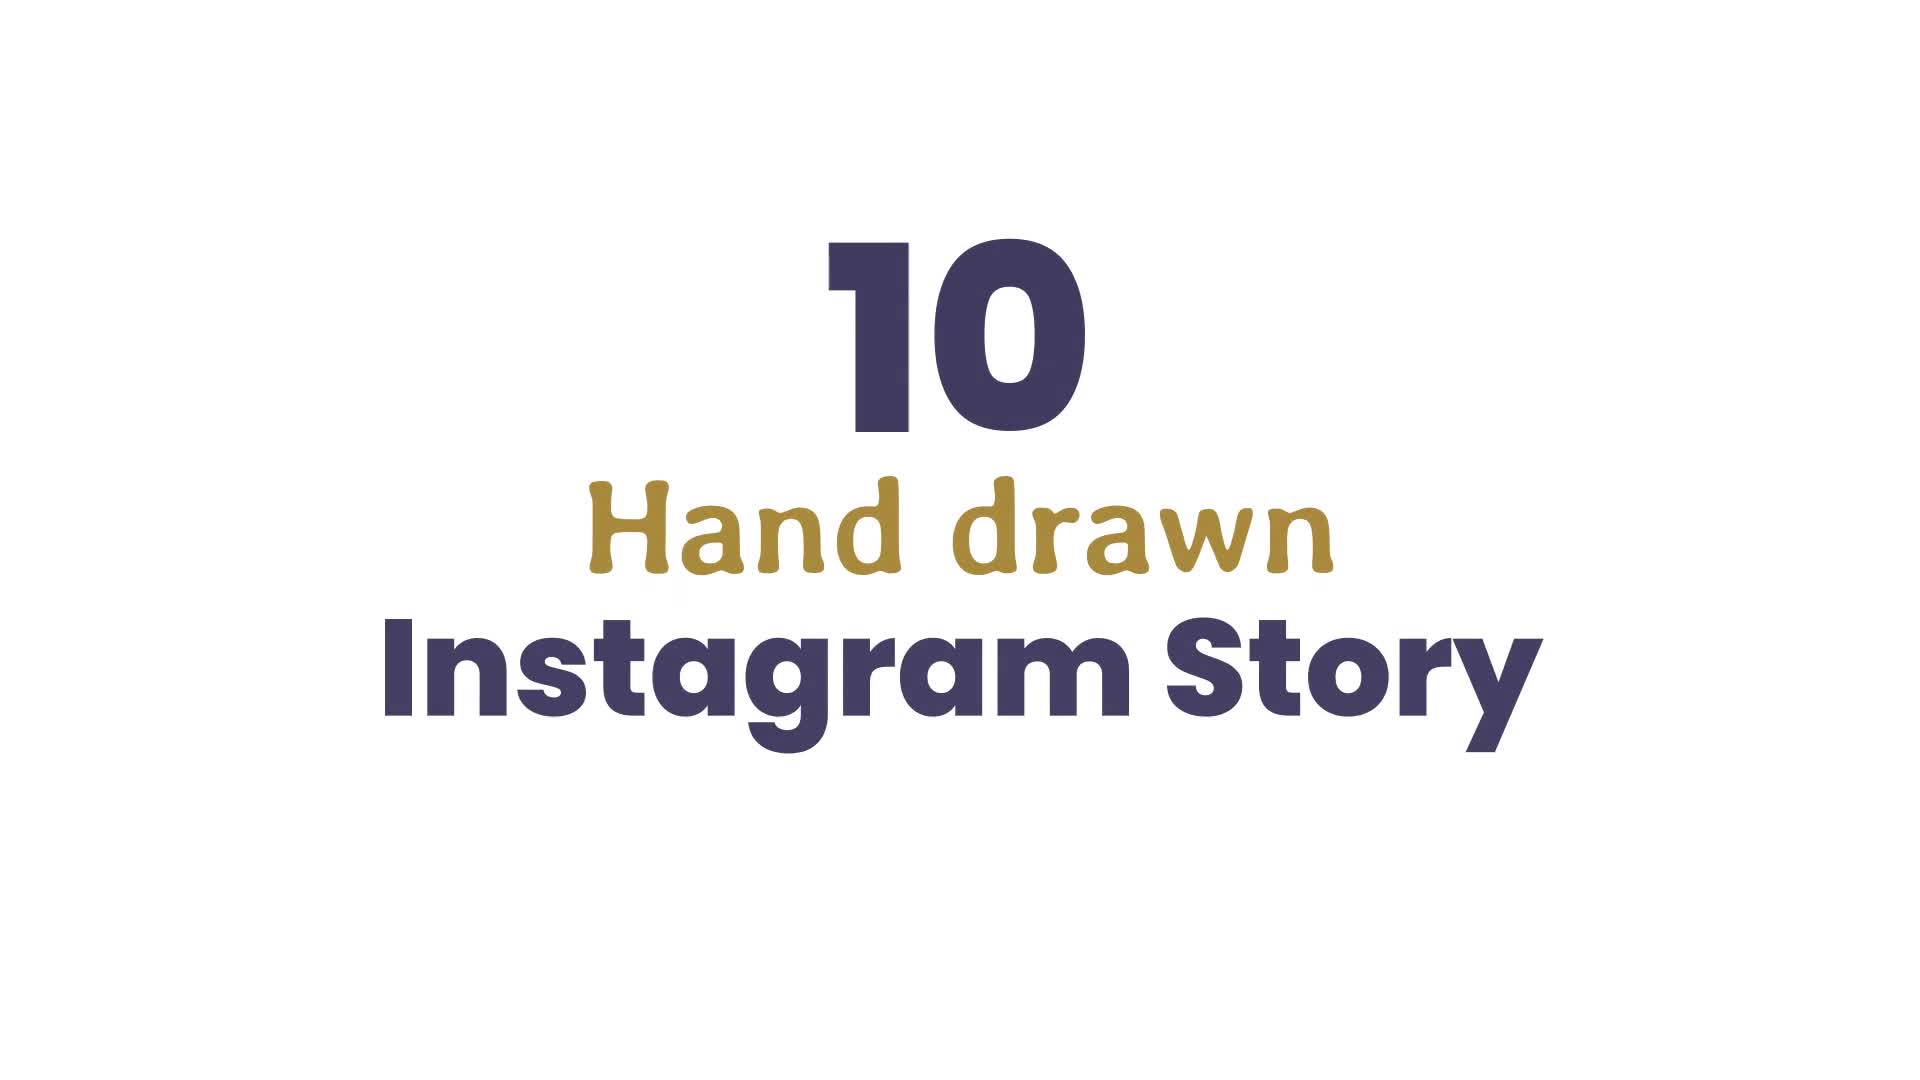 Hand-drawn Instagram stories: Trải nghiệm thú vị hơn với những câu chuyện được vẽ tay trong stories của bạn. Mỗi chữ viết tay, những đường nét vô cùng tự nhiên lồng ghép cùng nhau tạo nên những bức tranh tuyệt đẹp, thể hiện được nét cá tính độc đáo của riêng bạn. Thử ngay để cảm nhận và khám phá những điều tuyệt vời mà bạn có thể tạo ra!